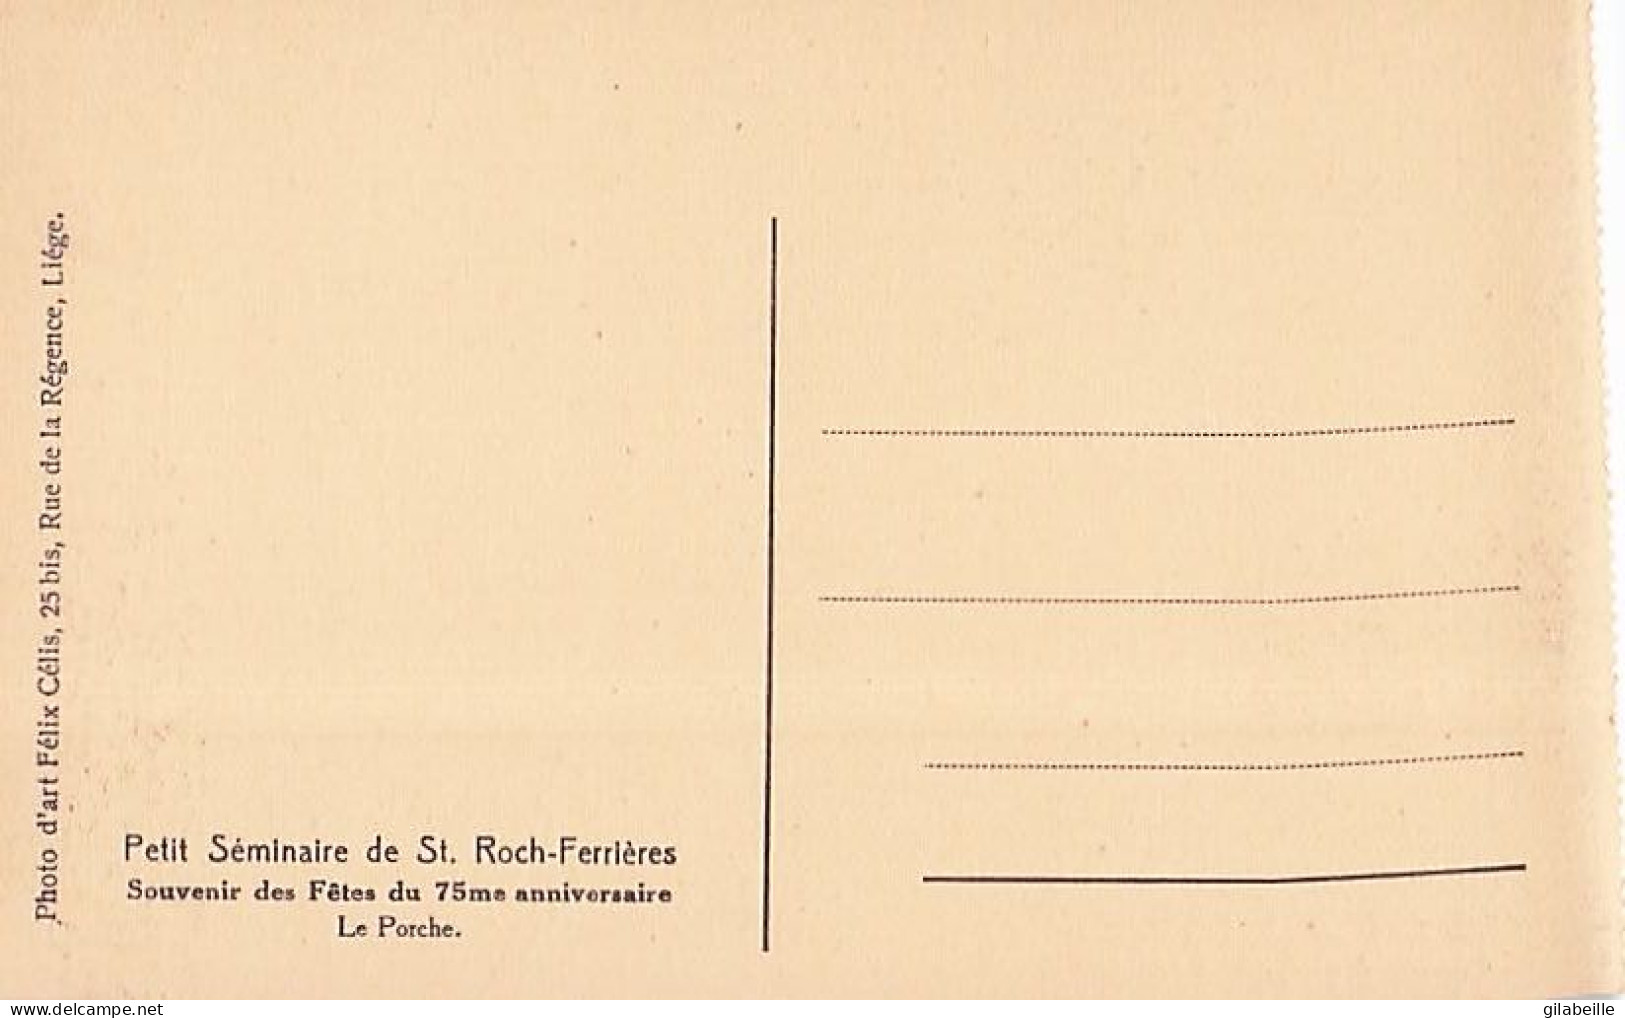 FERRIERES  - petit séminaire de Saint Roch- Ferrieres - lot 21 cartes  - souvenir fetes du 75 eme anniversaire